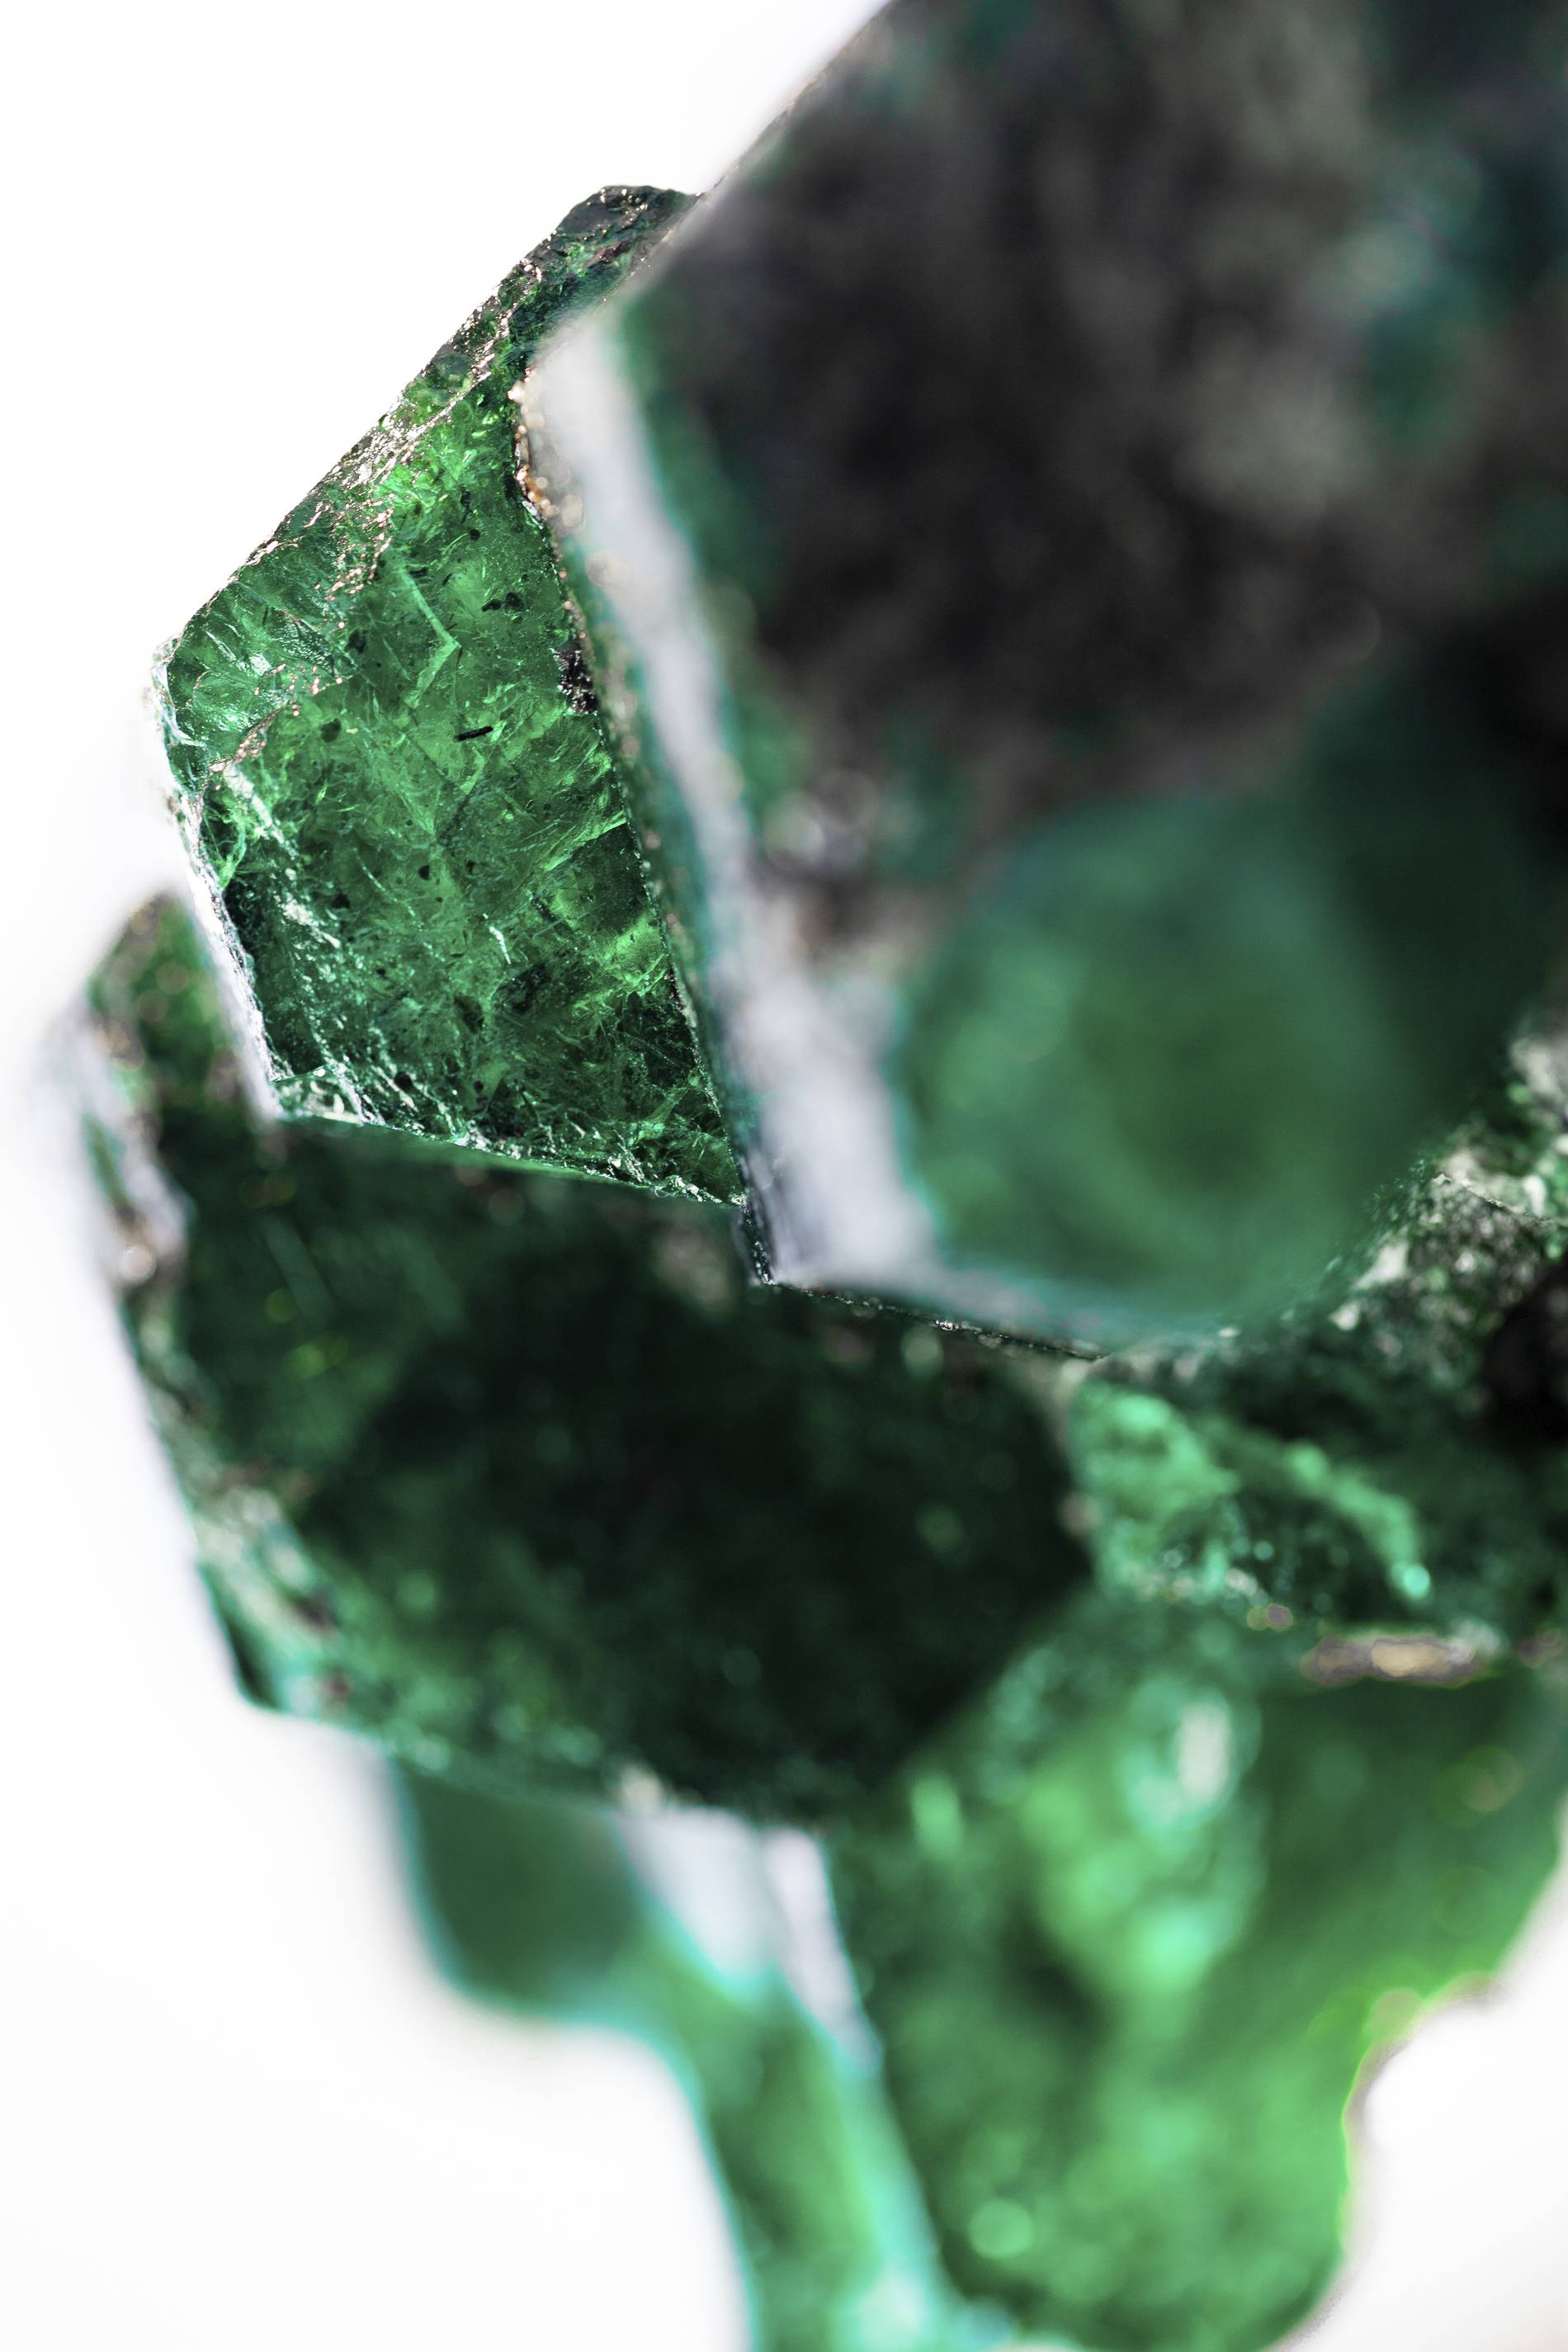 Gemfields' Chipembele emerald detail